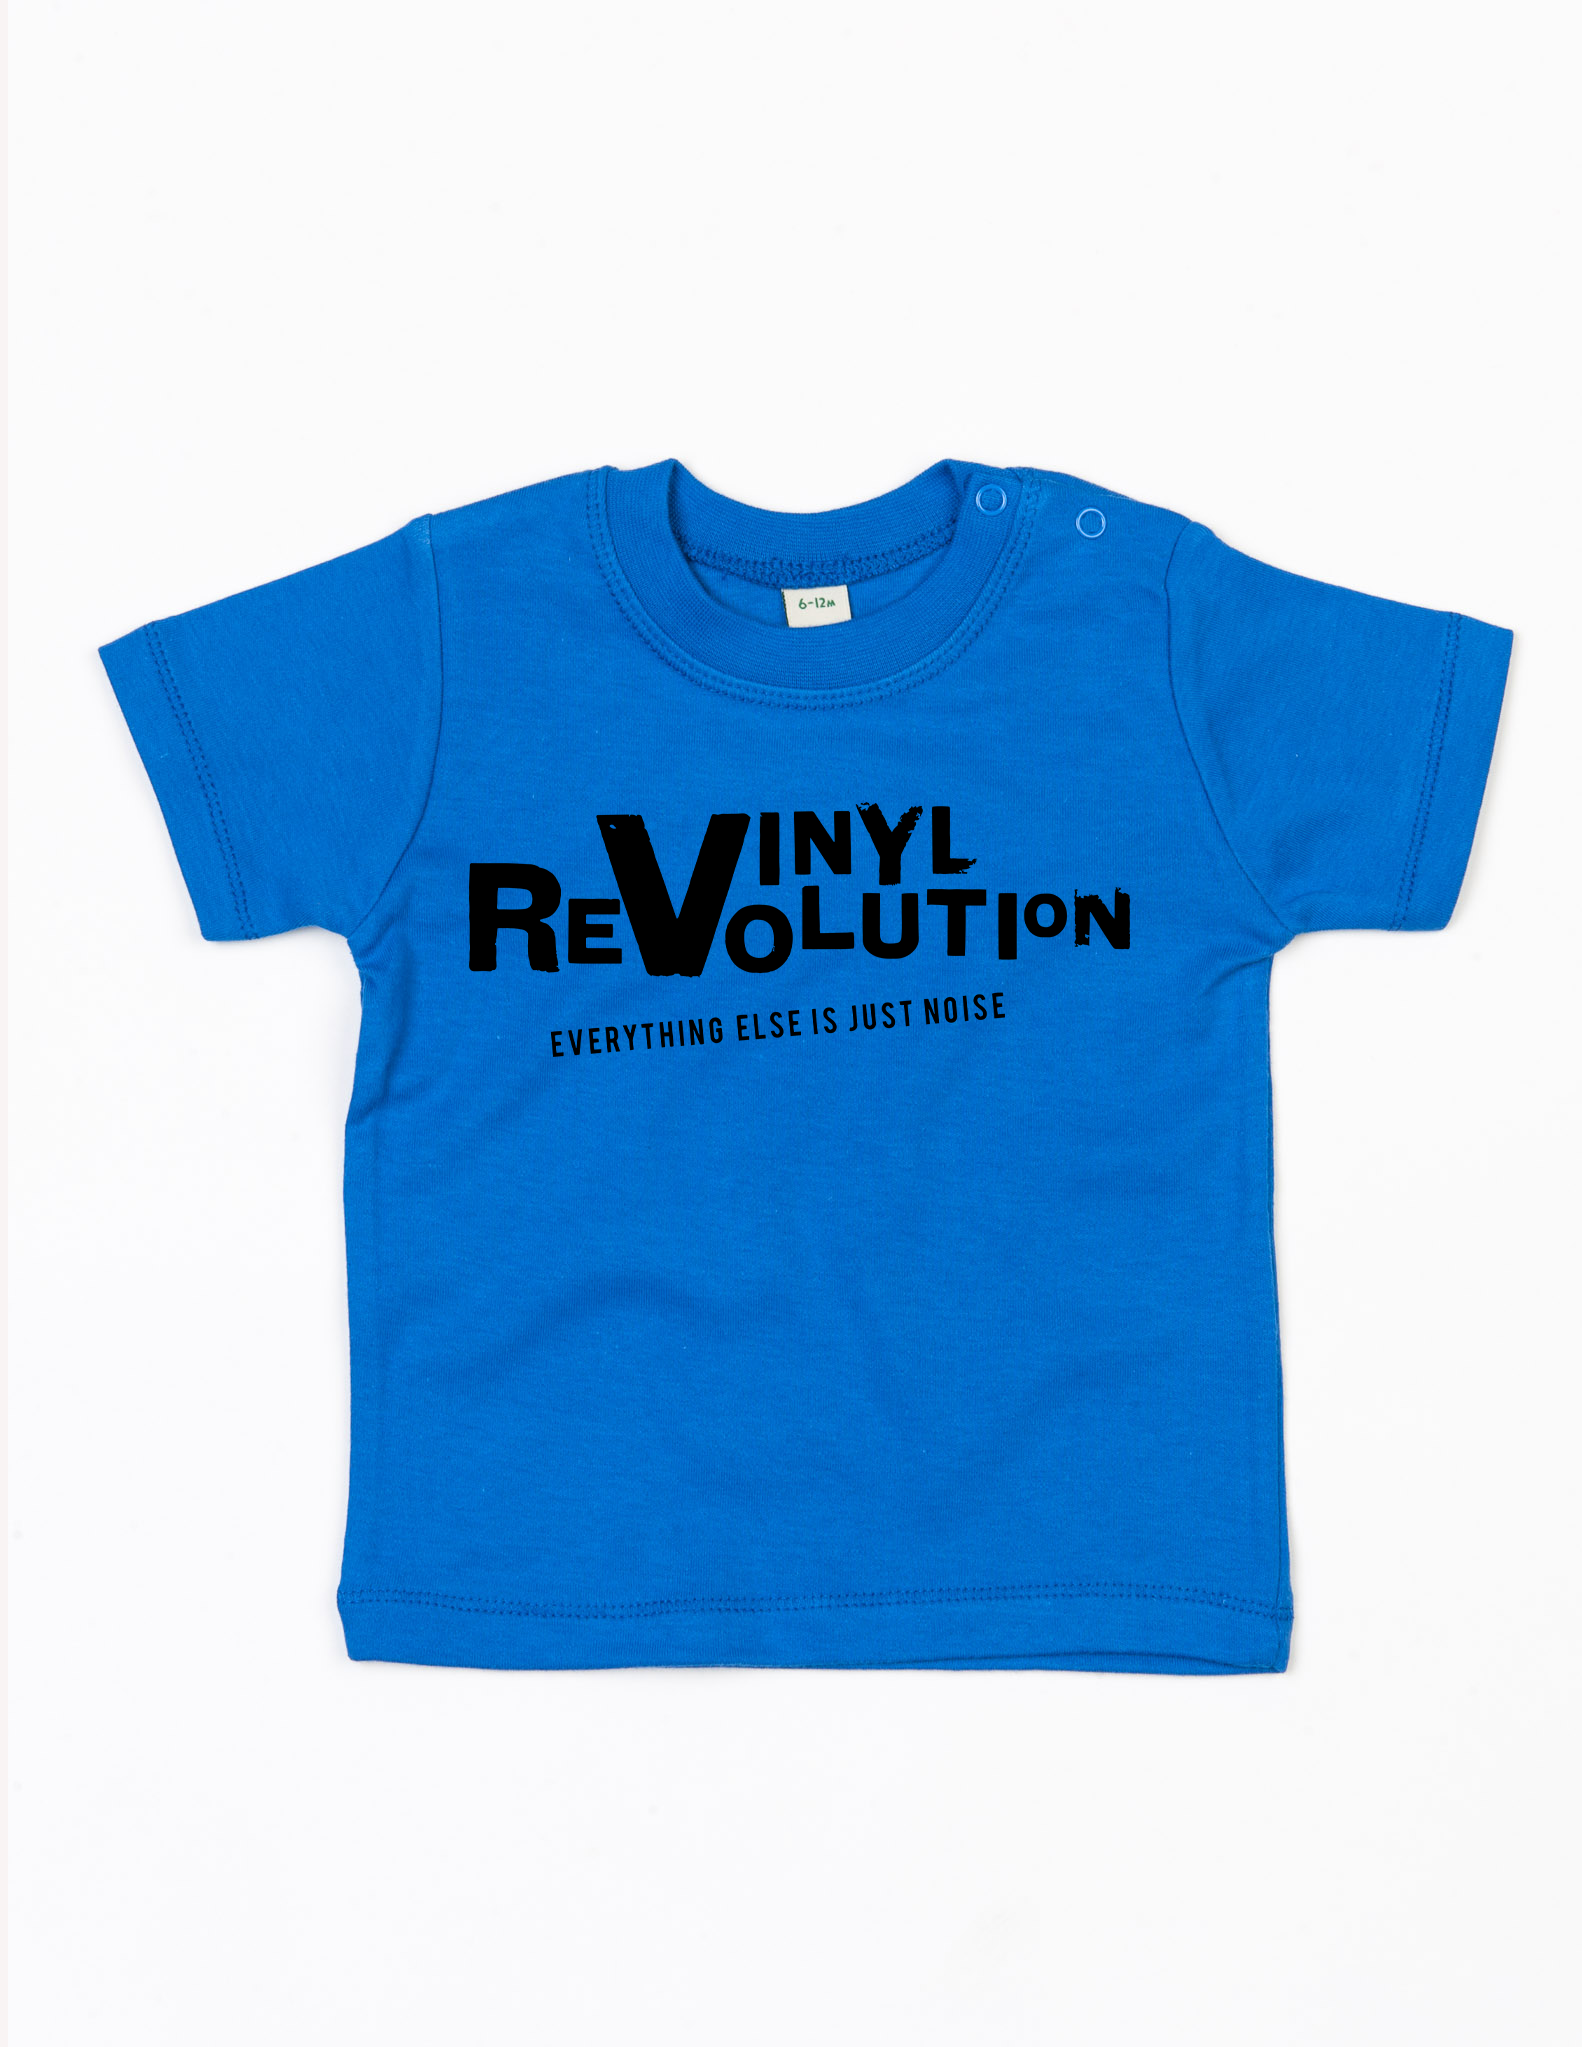 Bio Grenouillère 'Vinyl Revolution'